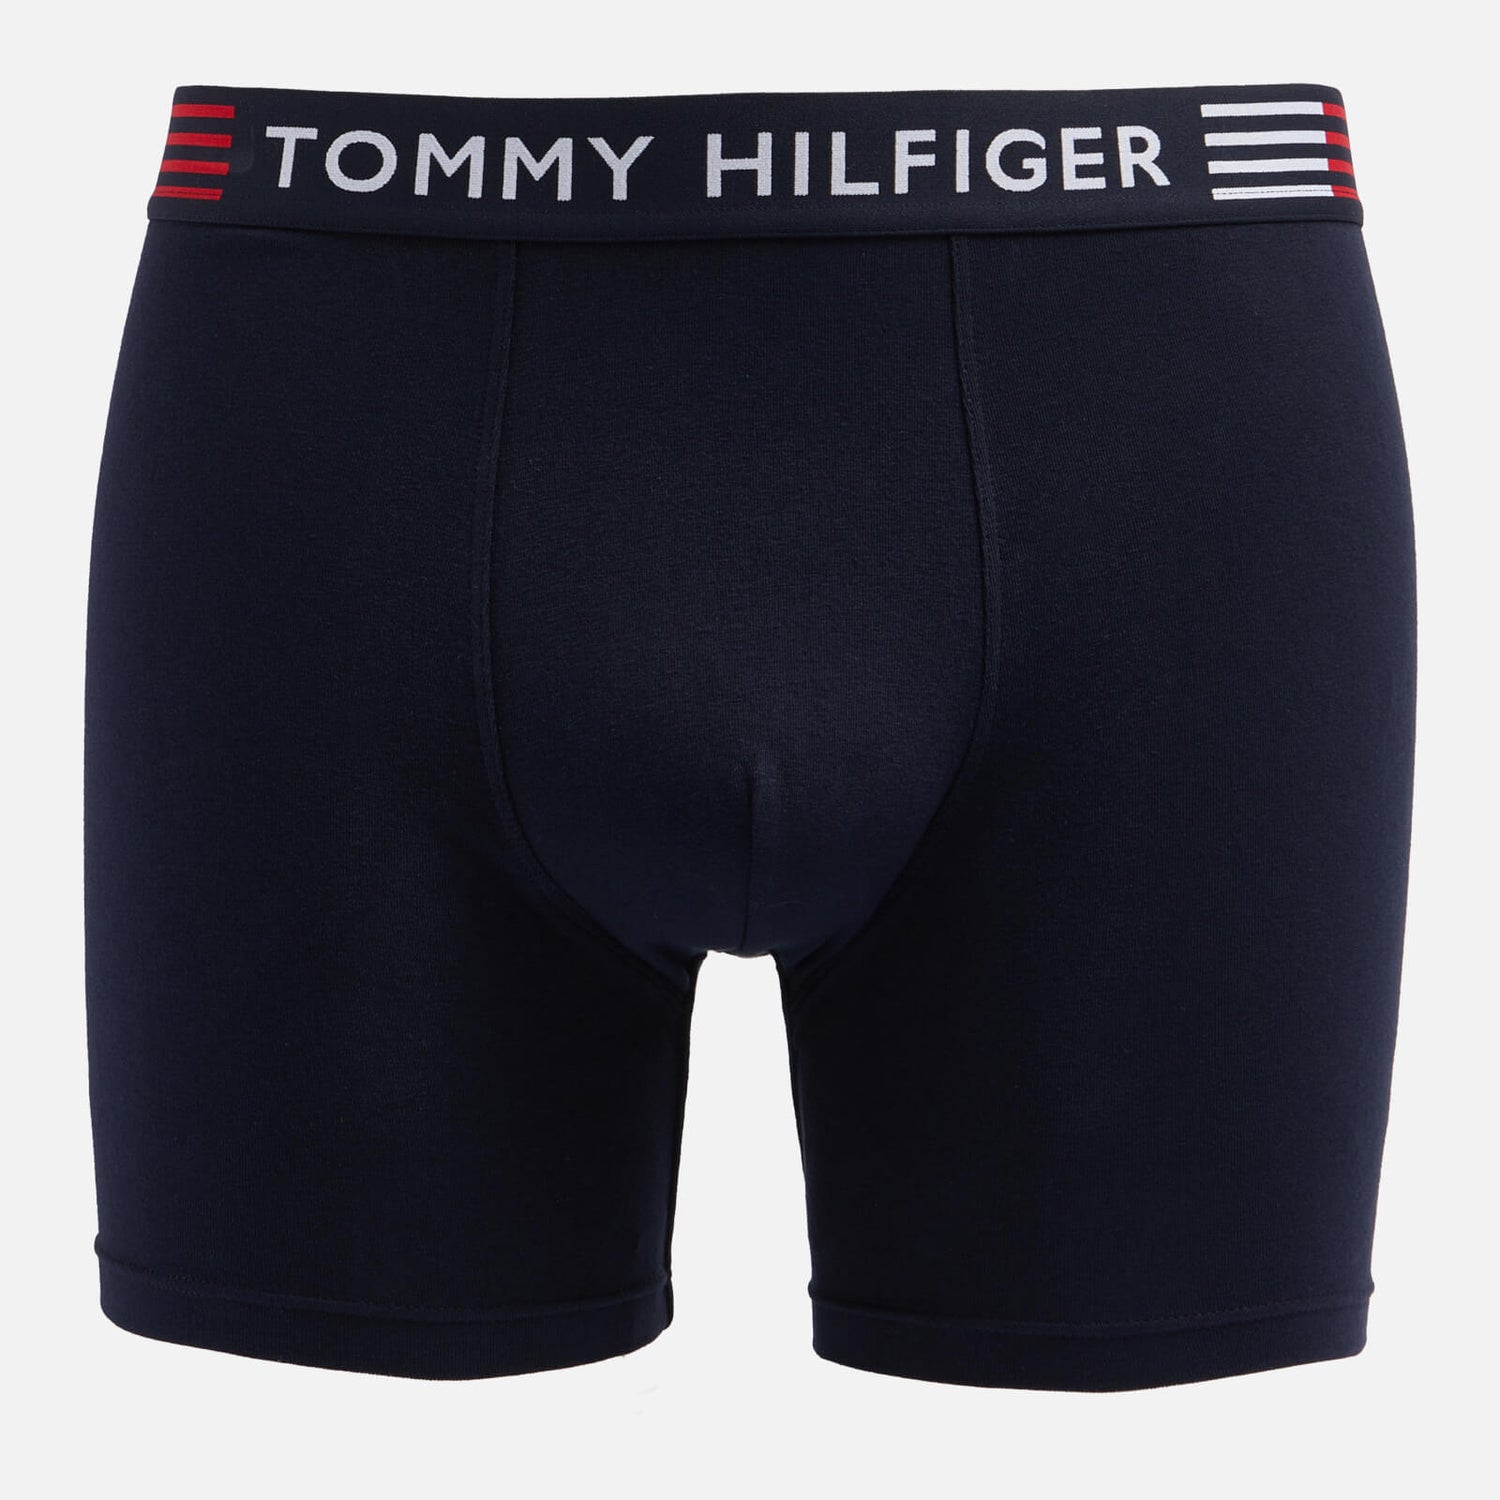 Tommy Hilfiger Stretch-Cotton Boxer Briefs